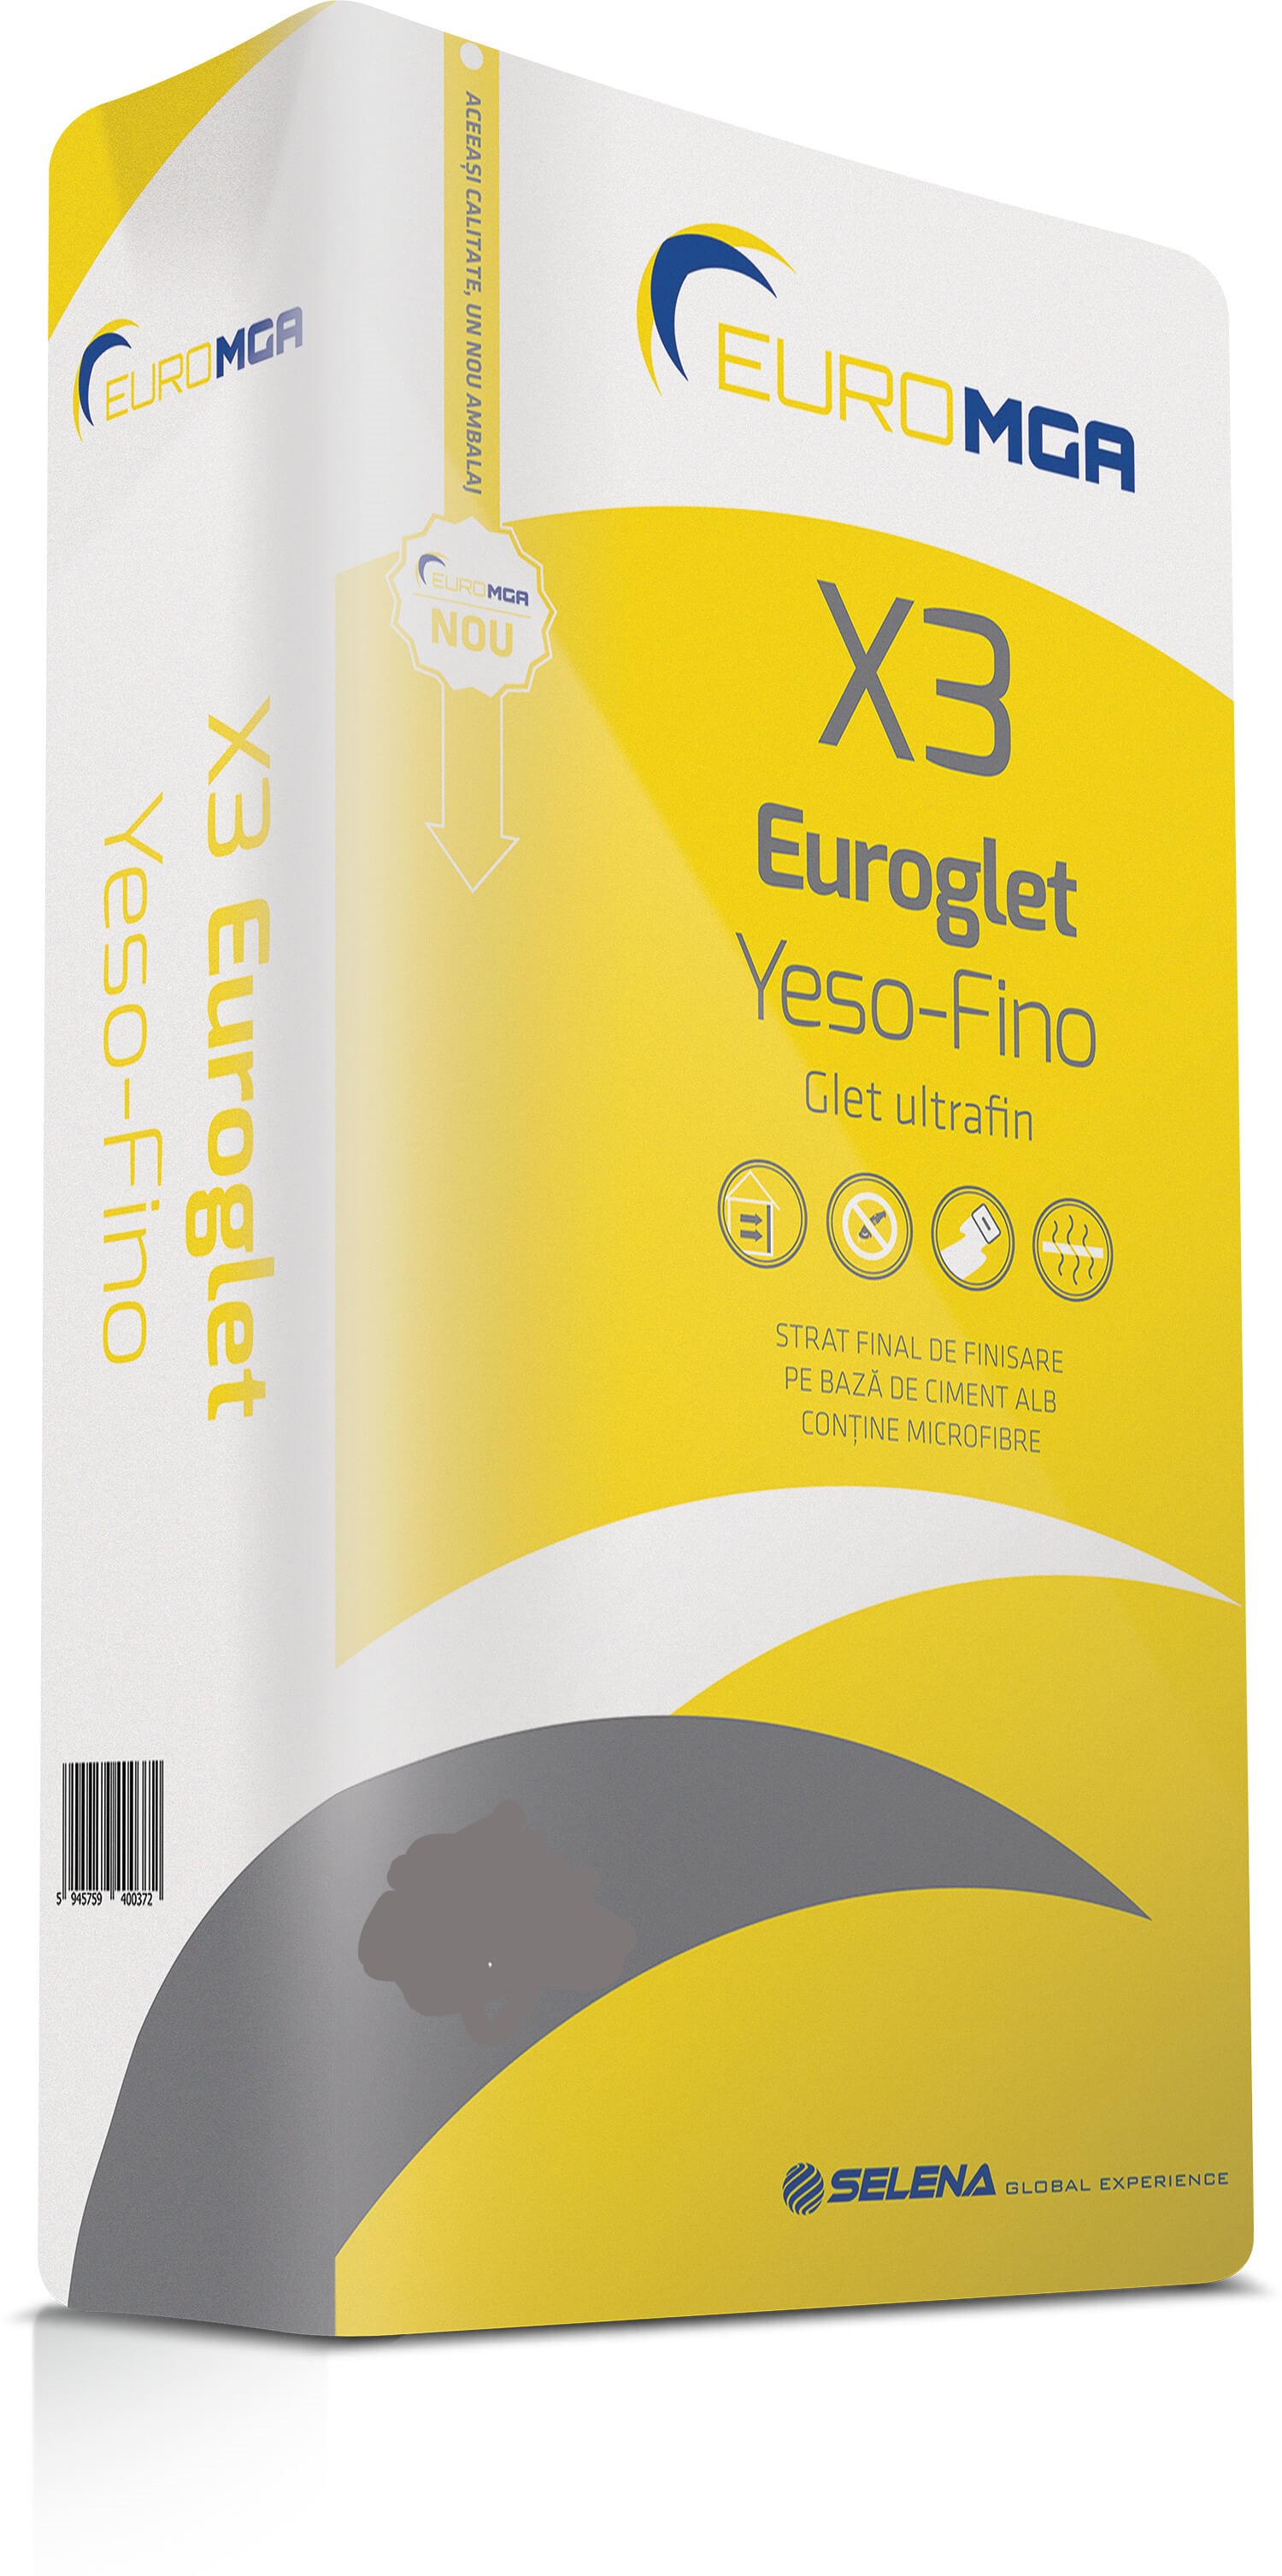 Gleturi - Glet ultrafin de finisare X3 Euroglet Yeso-Fino EuroMGA 5 kg, maxbau.ro